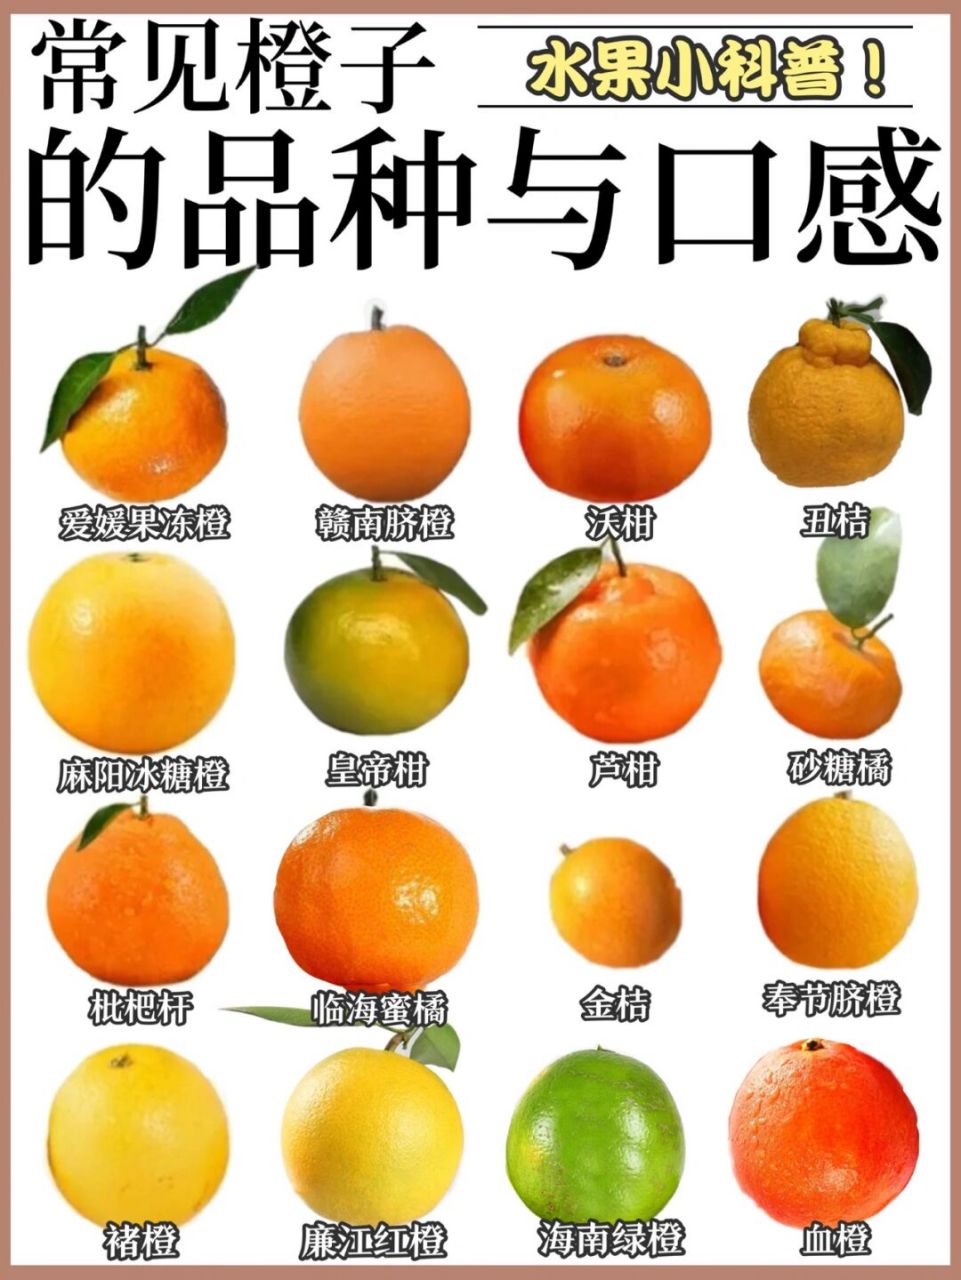 混淆 今天我来分享几款市面上常见又容易混淆的柑,橘,橙的区别及分类!